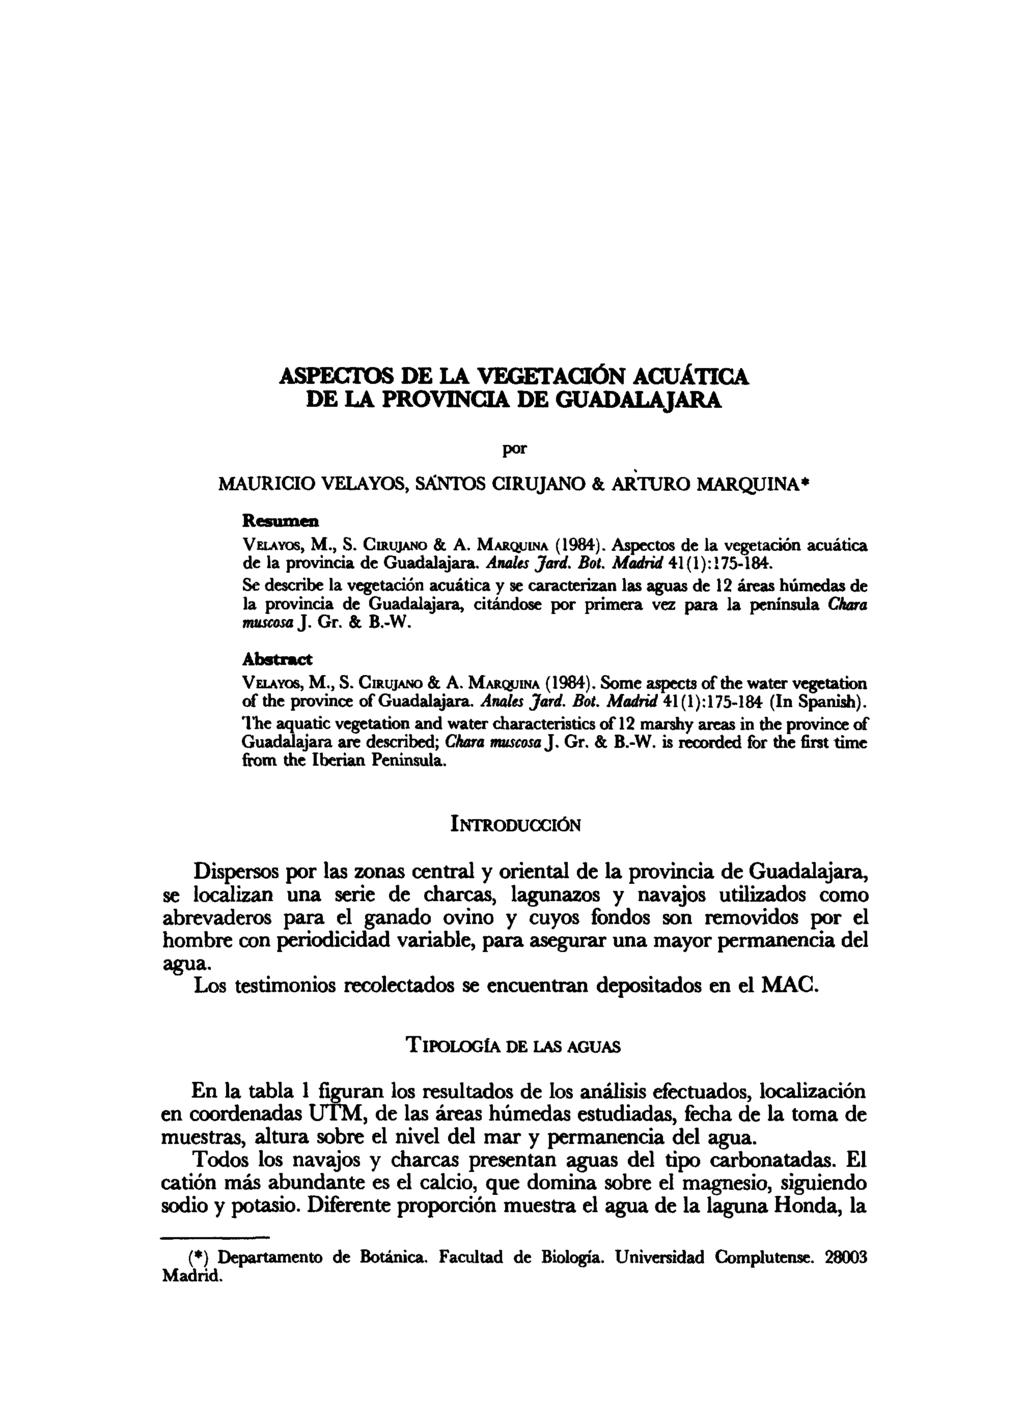 ASPECTOS DE LA VEGETACIÓN ACUÁTICA DE LA PROVINCIA DE GUADALAJARA por MAURICIO VELAYOS, SANTOS CIRUJANO & ARTURO MARQUINA* Resumen VELAYOS, M., S. CIRUJANO & A. MARQUINA (1984).